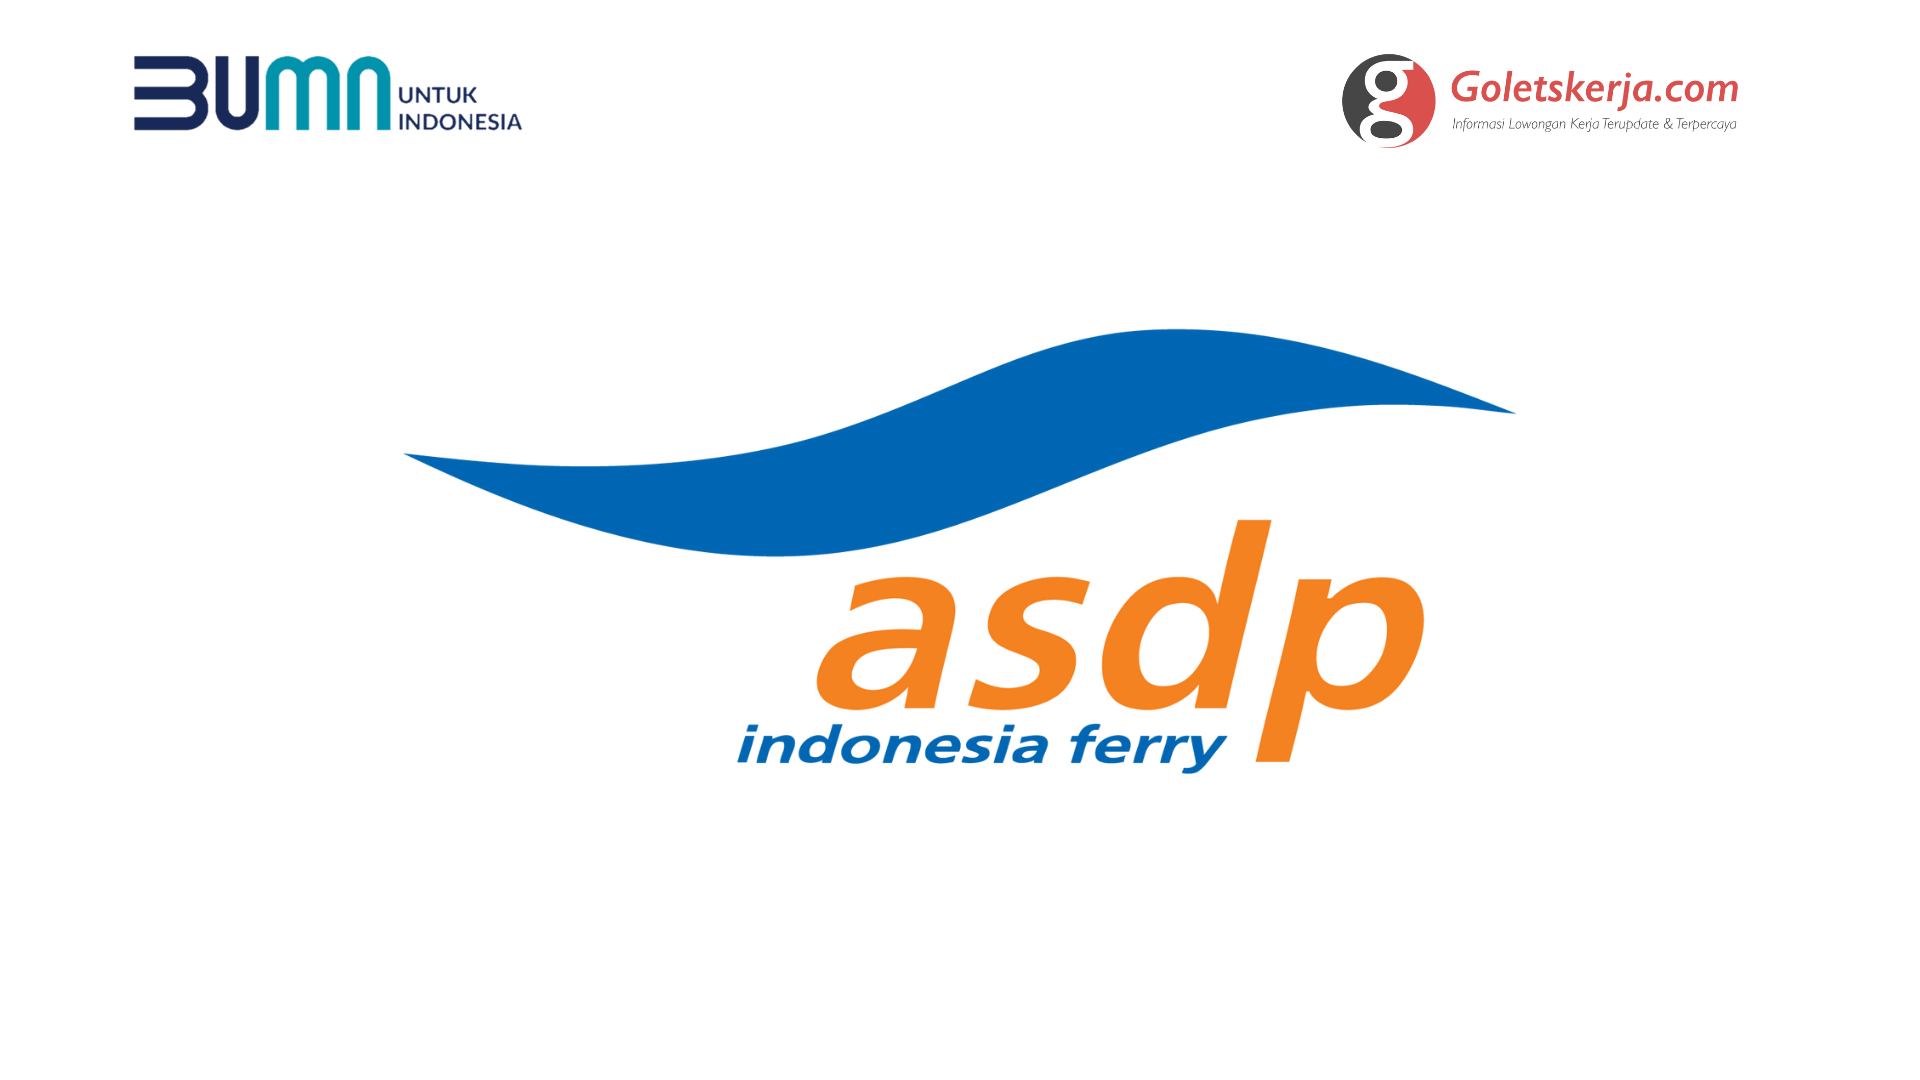 Lowongan Kerja PT ASDP Indonesia Ferry (Persero)